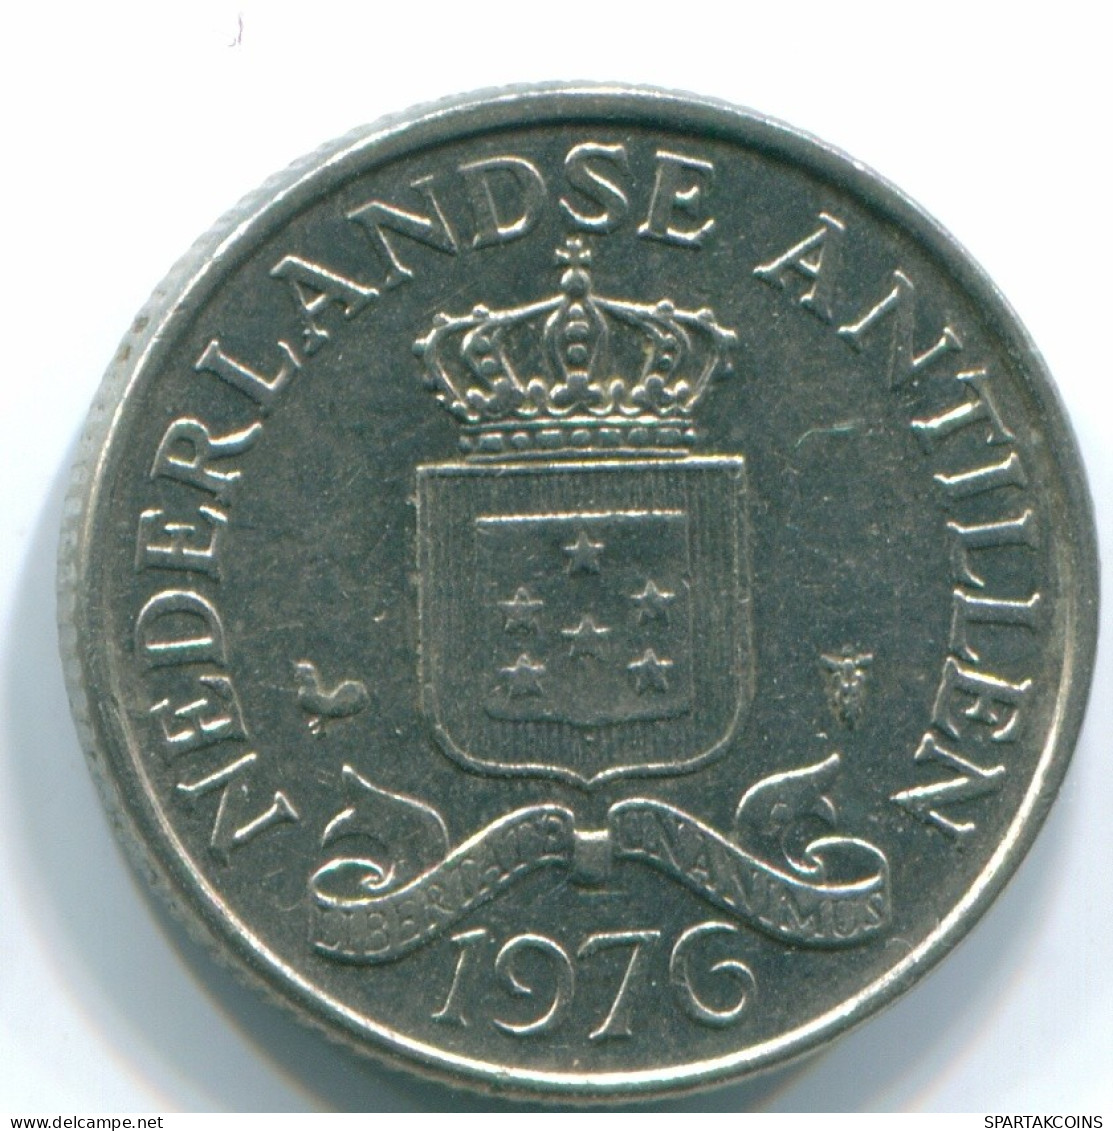 25 CENTS 1976 NIEDERLÄNDISCHE ANTILLEN Nickel Koloniale Münze #S11641.D.A - Niederländische Antillen